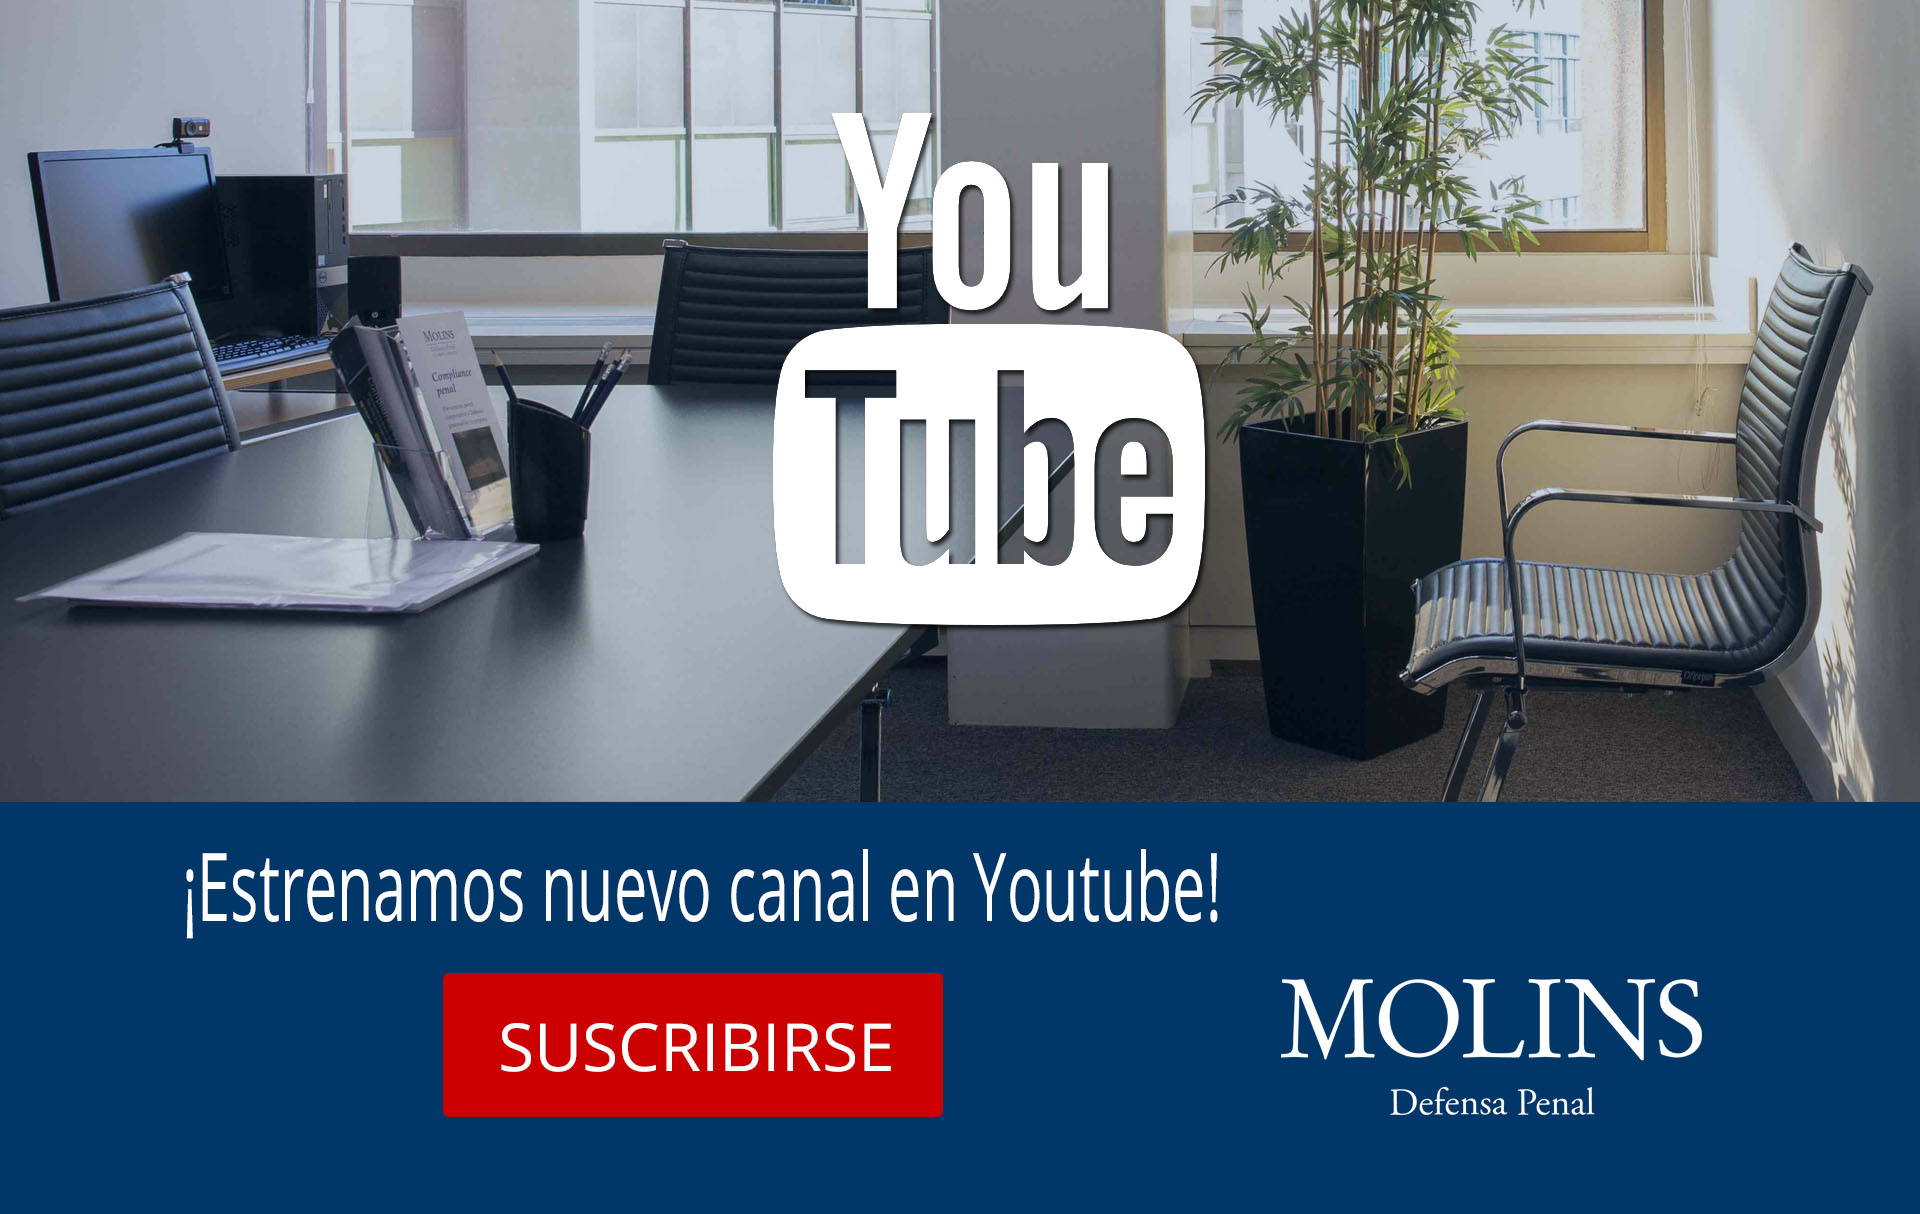 Molins Defensa Penal estrena nuevo canal de comunicación en Youtube